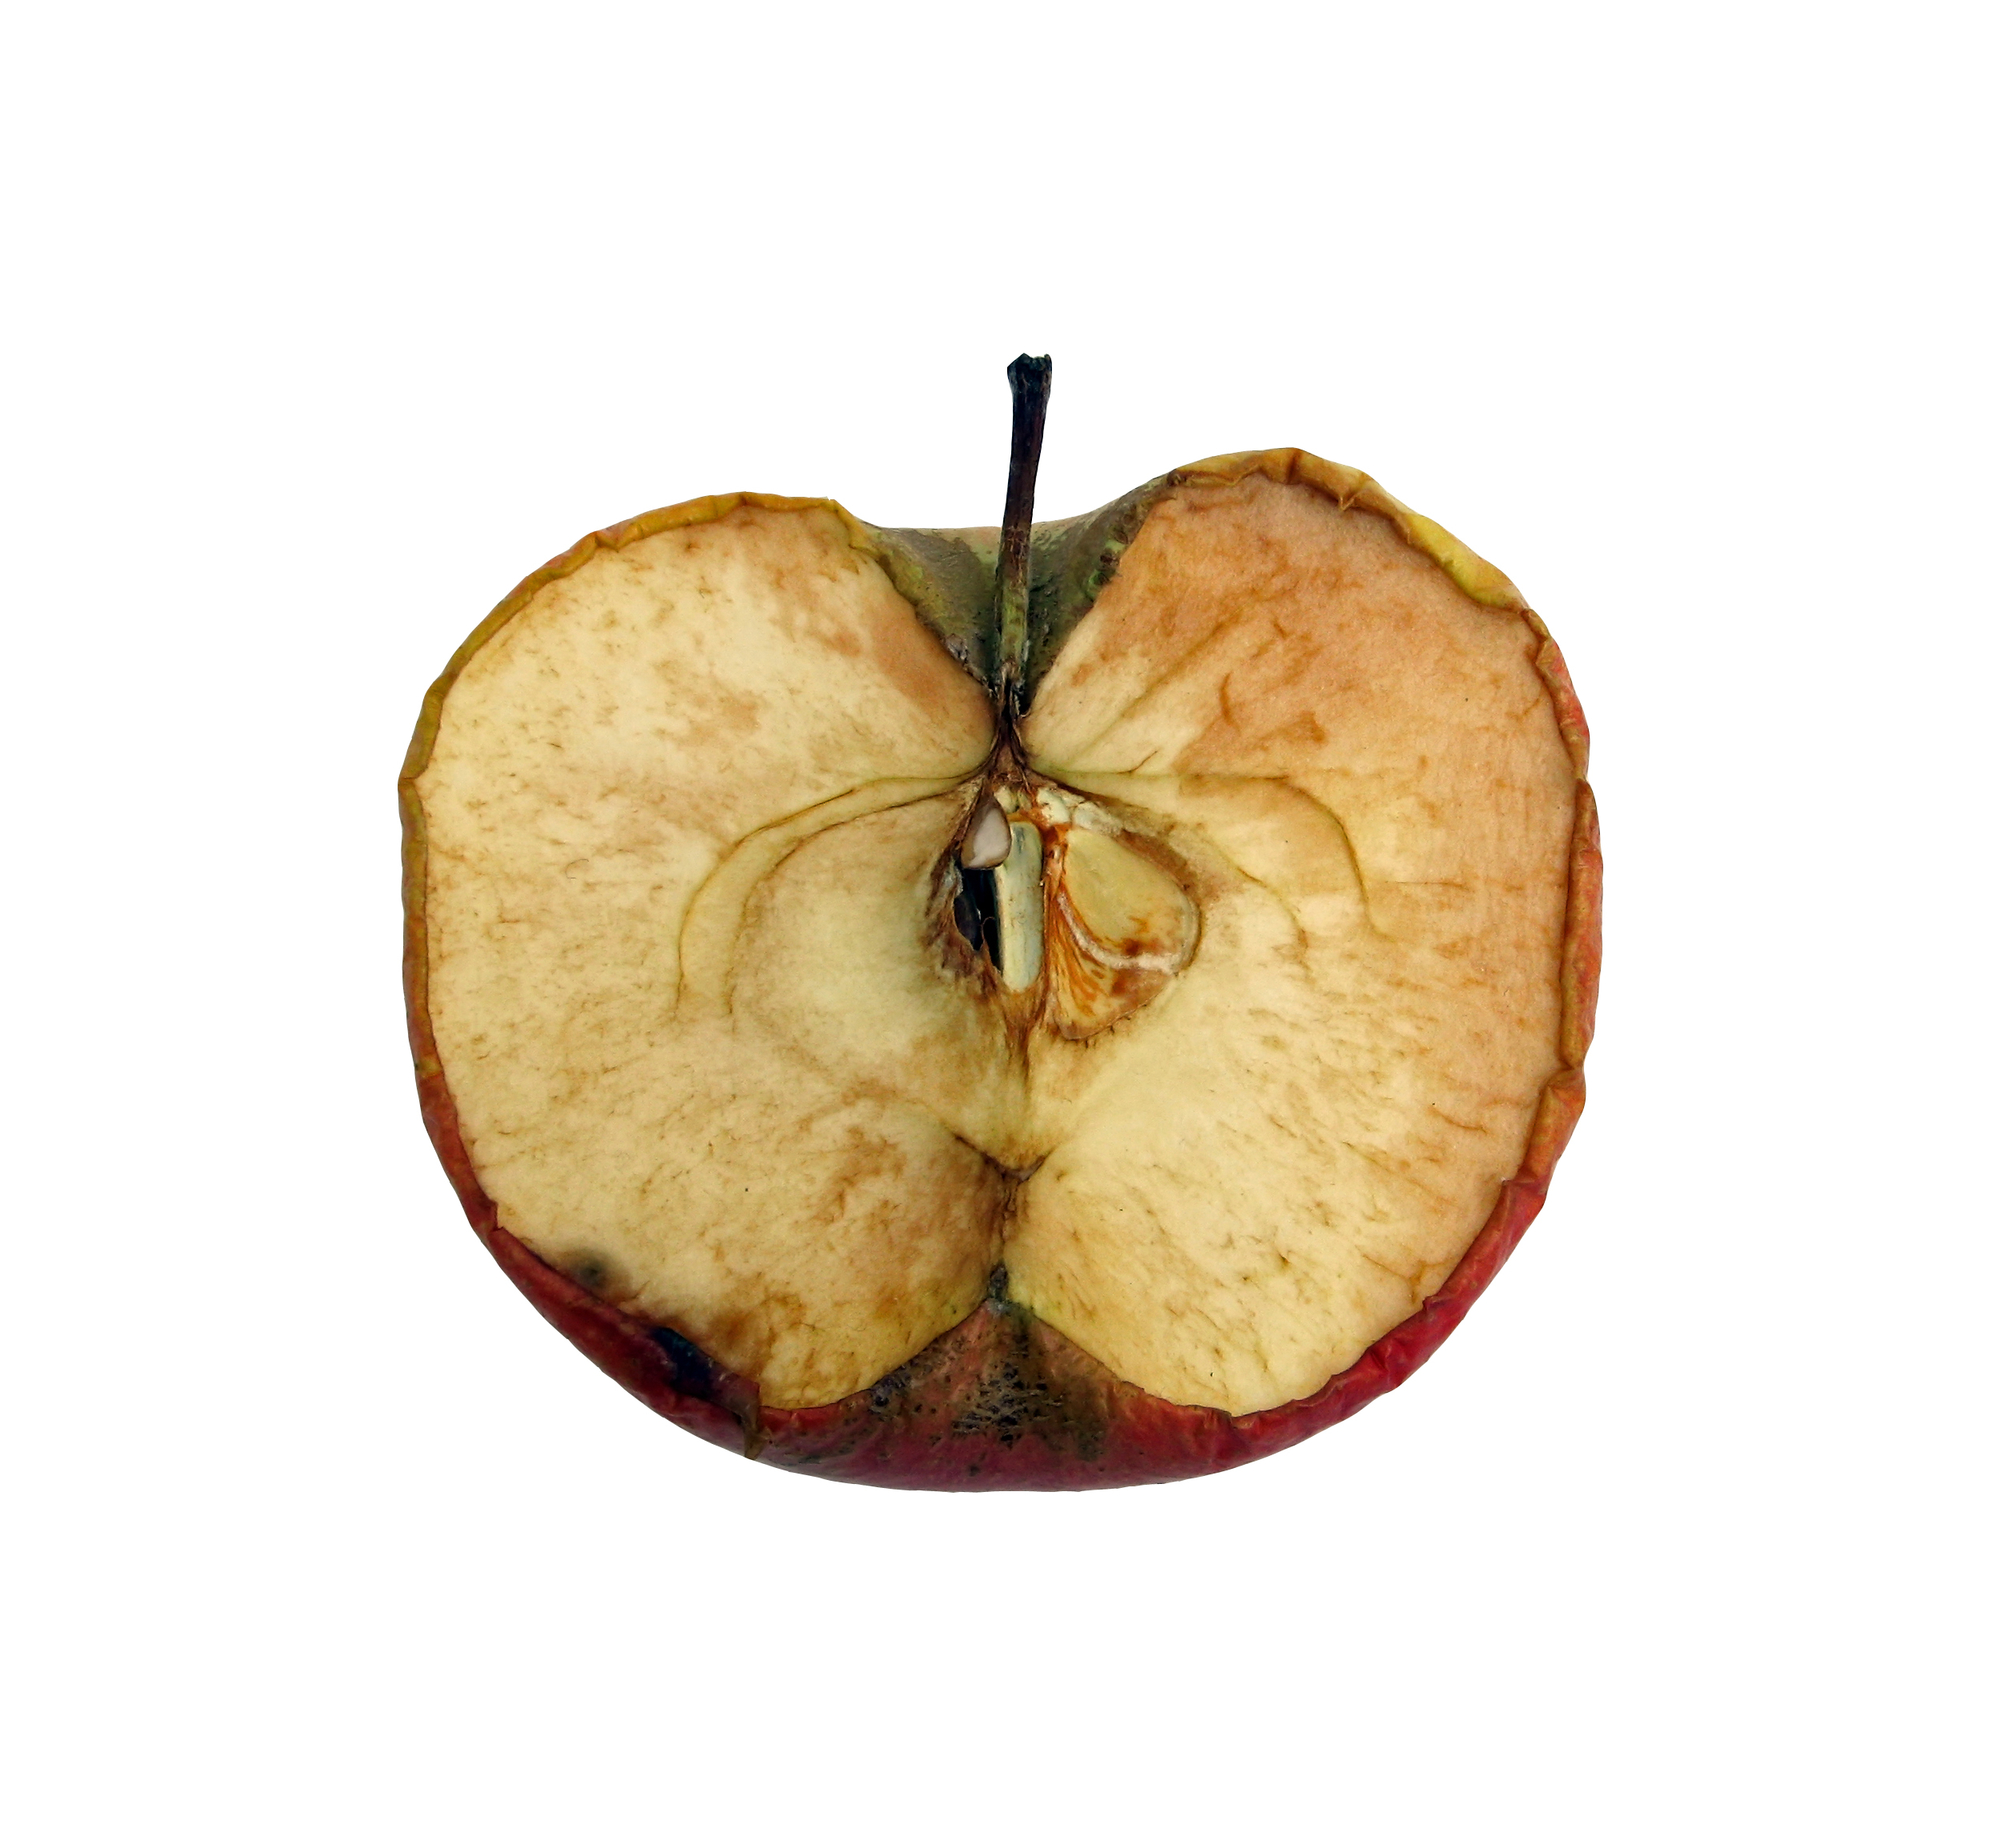 hat Apple wie dieser Apfel die besten Zeiten hinter sich?